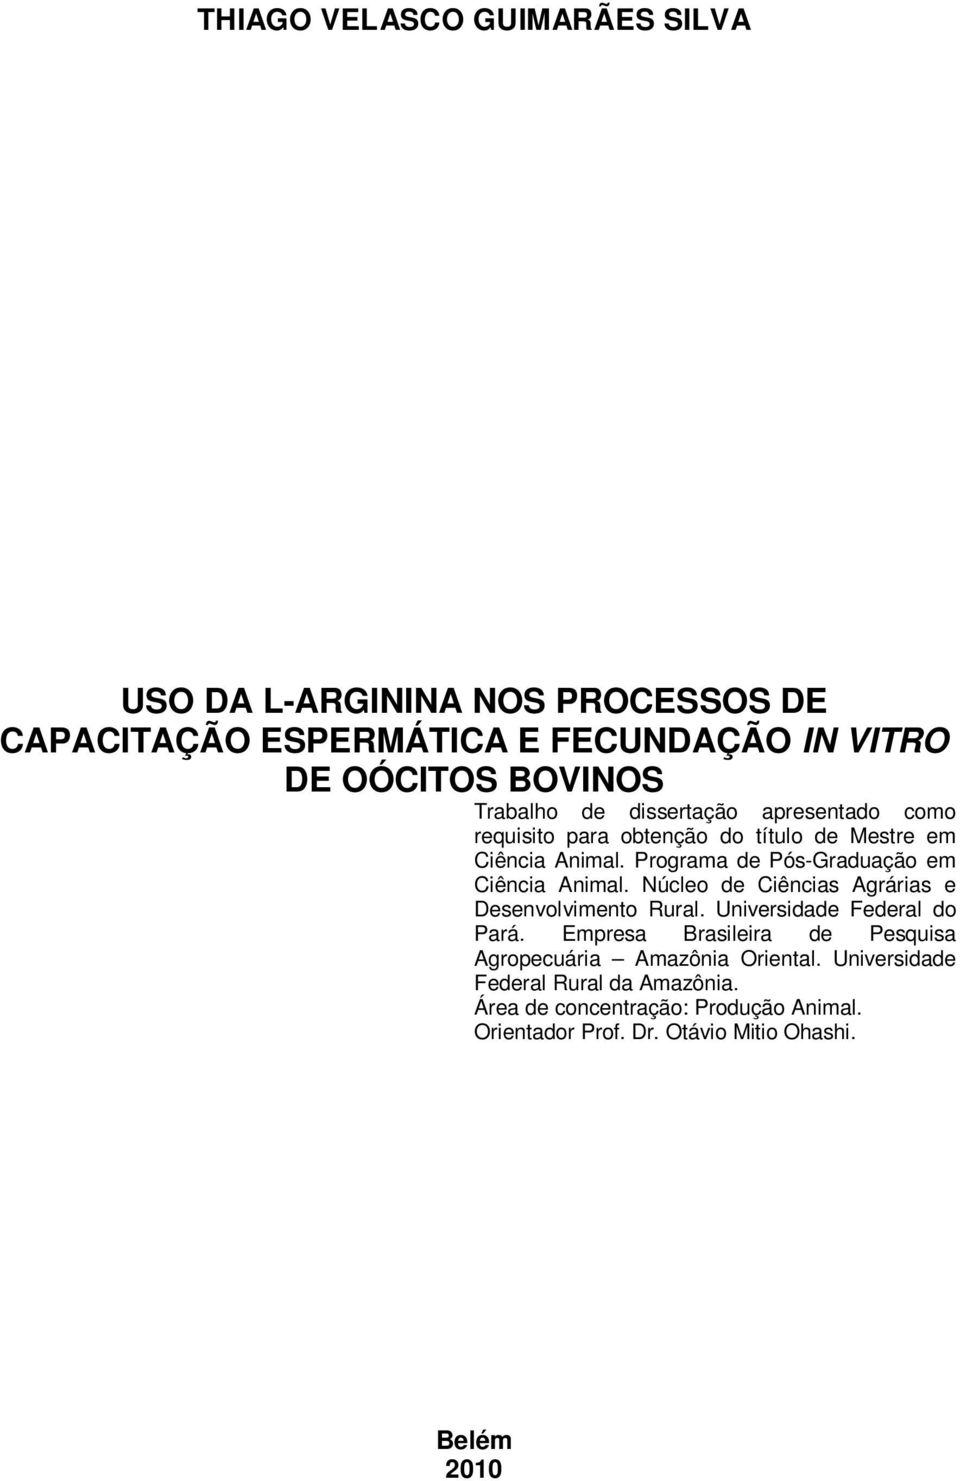 Núcleo de Ciências Agrárias e Desenvolvimento Rural. Universidade Federal do Pará.